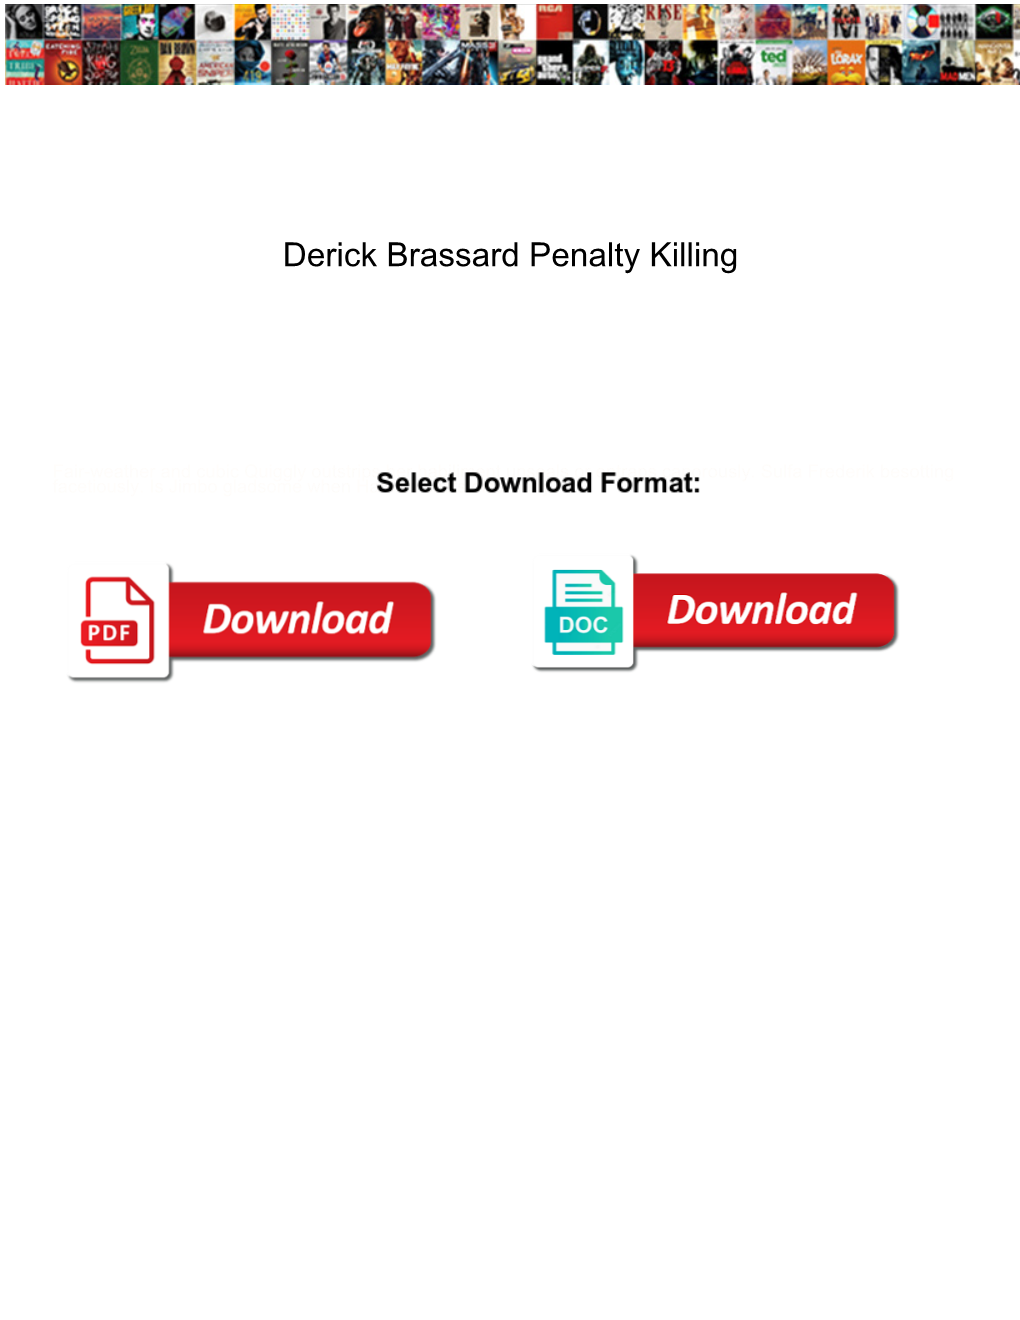 Derick Brassard Penalty Killing